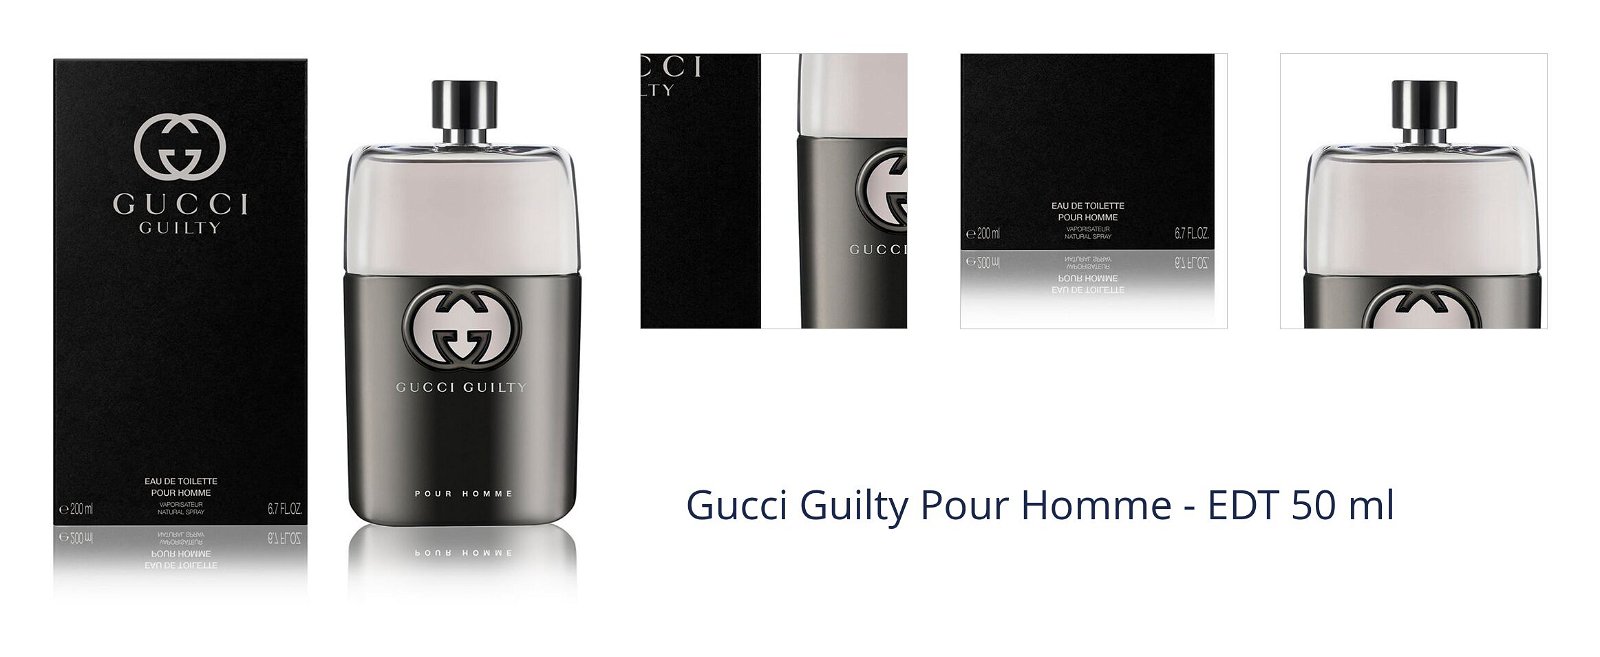 Gucci Guilty Pour Homme - EDT 50 ml 7